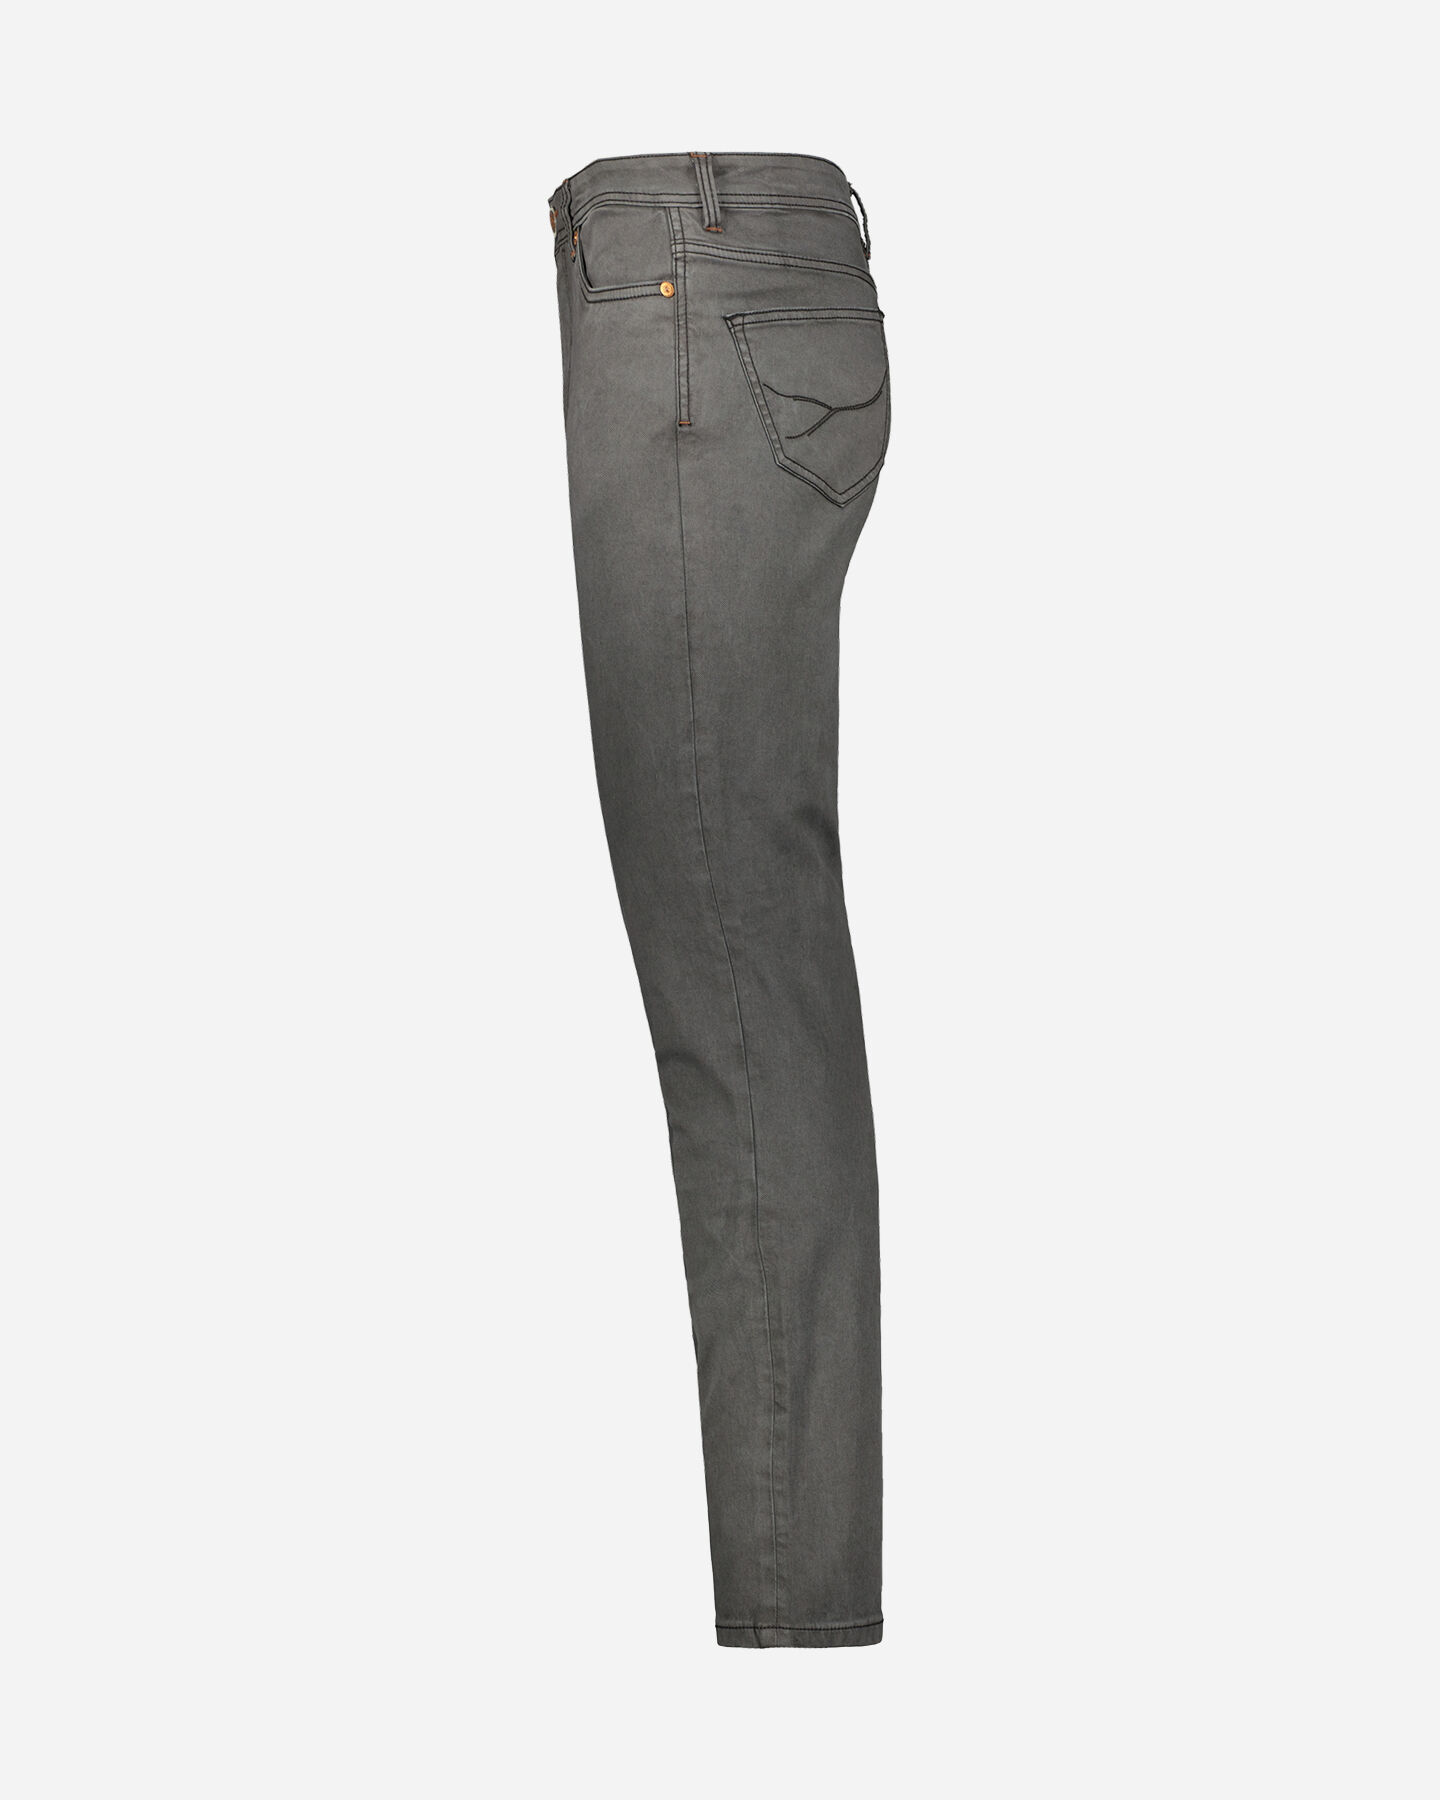  Pantalone COTTON BELT HAMILTON M S4113473|910|40 scatto 1